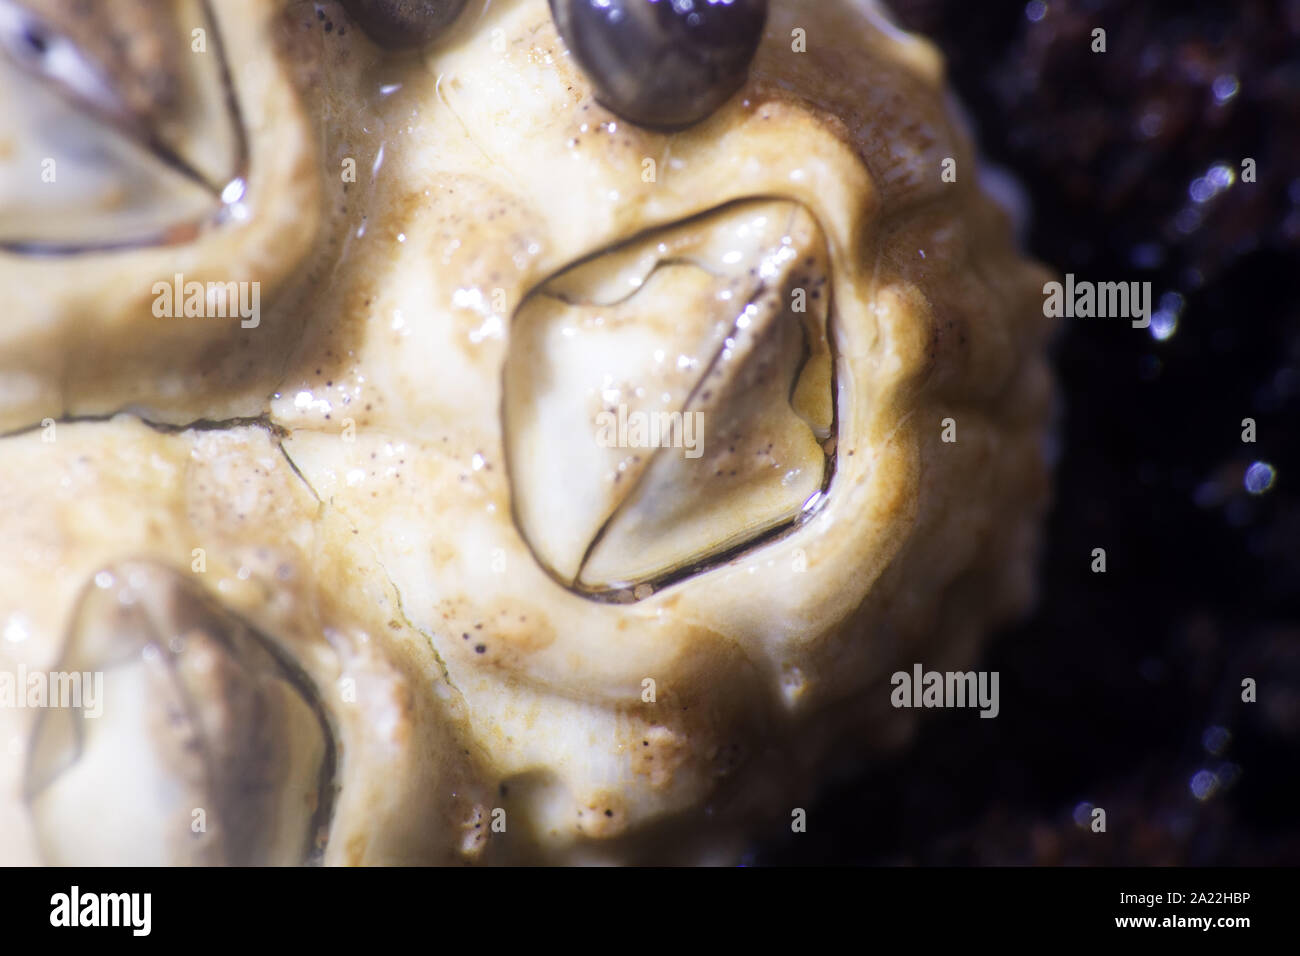 El mar de ACORN, shellback (Balanus) de algas en las piedras durante la marea baja - fétido, xylotria, animales dañinos. Macro. Invisible a los ojos del mundo plantas marinas. Foto de stock